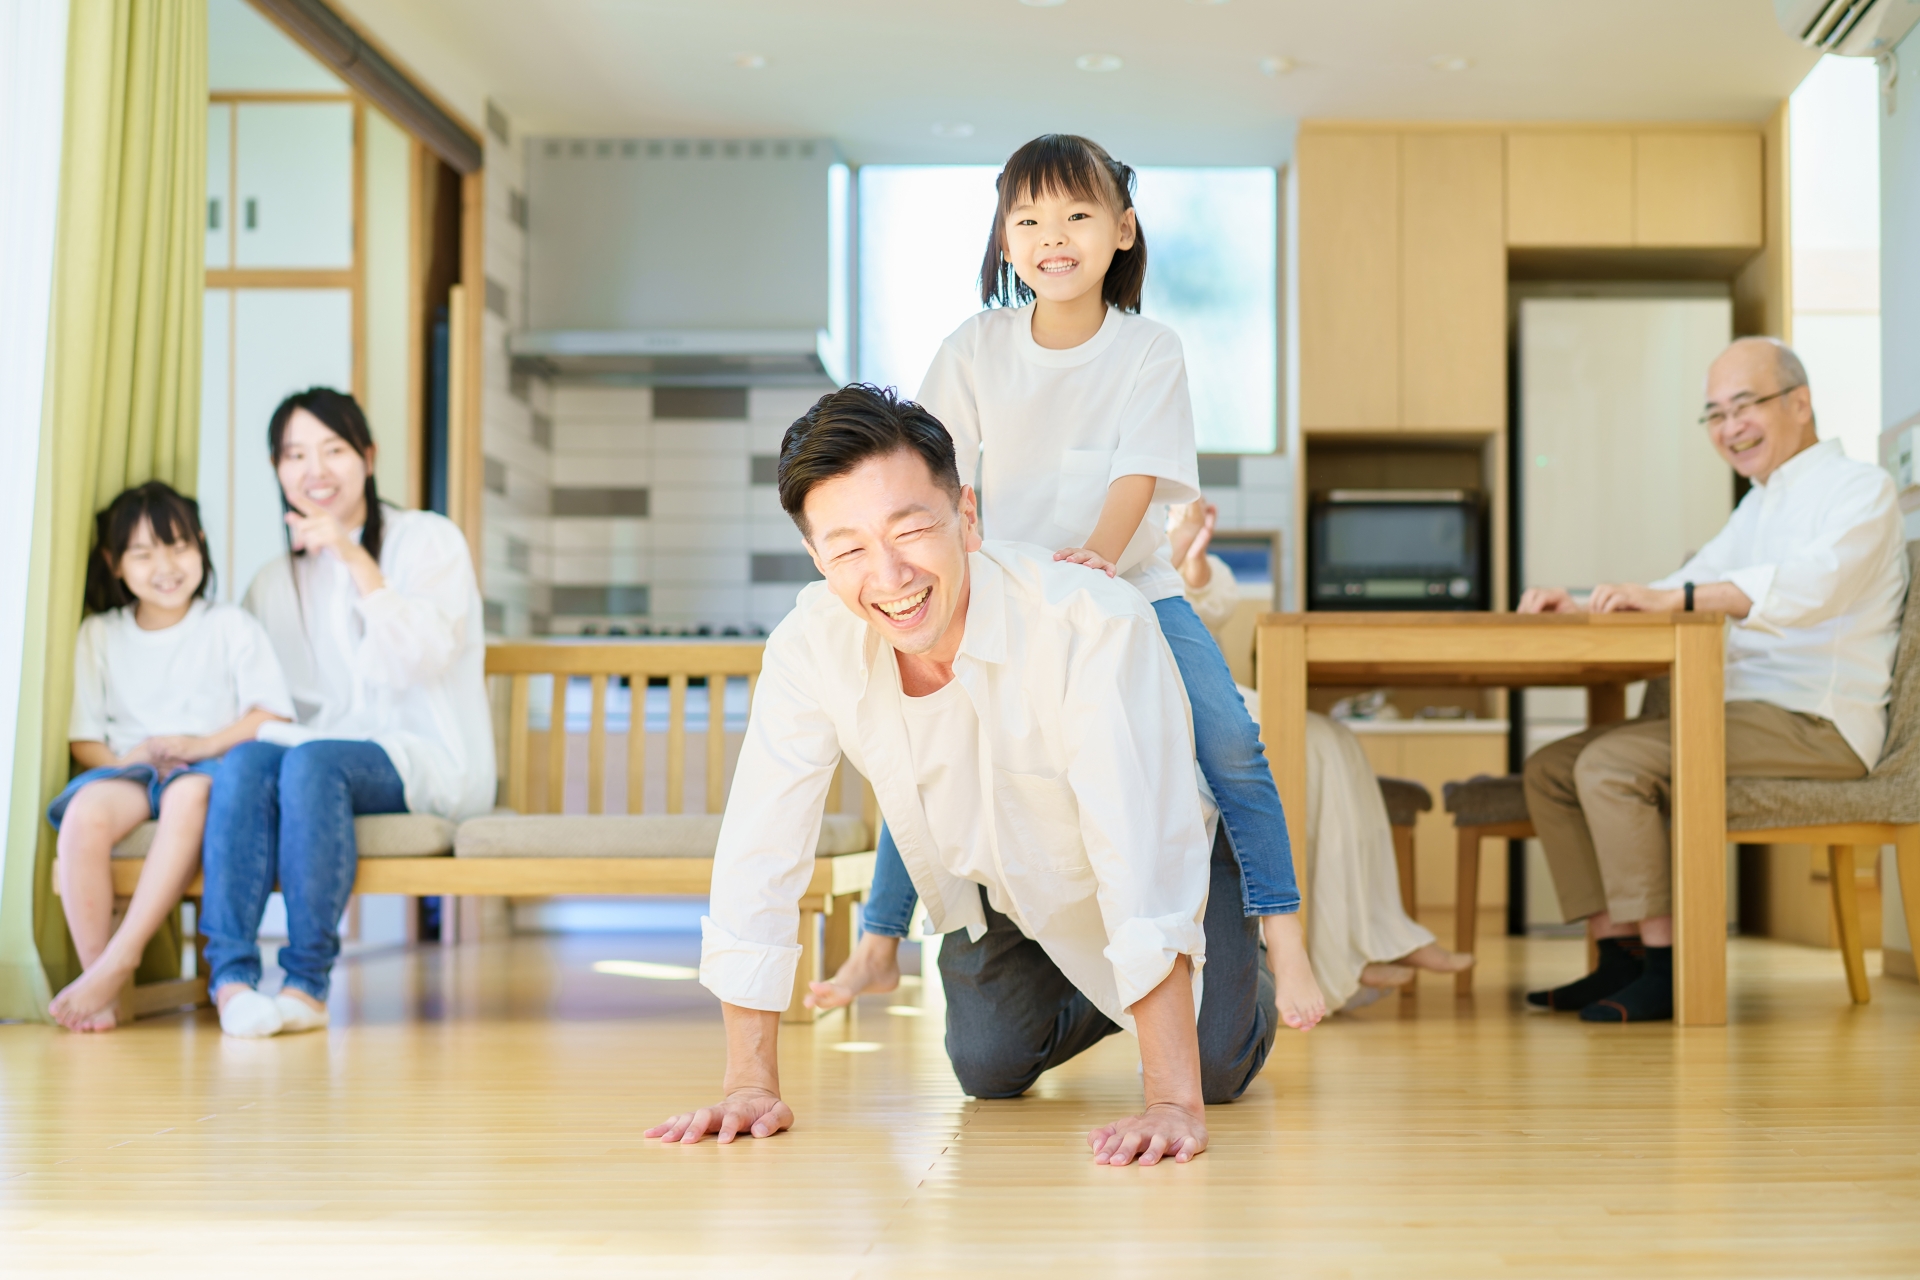 家を建てるなら徳島県石井町、子育て世代に住みここちが良い5つの理由